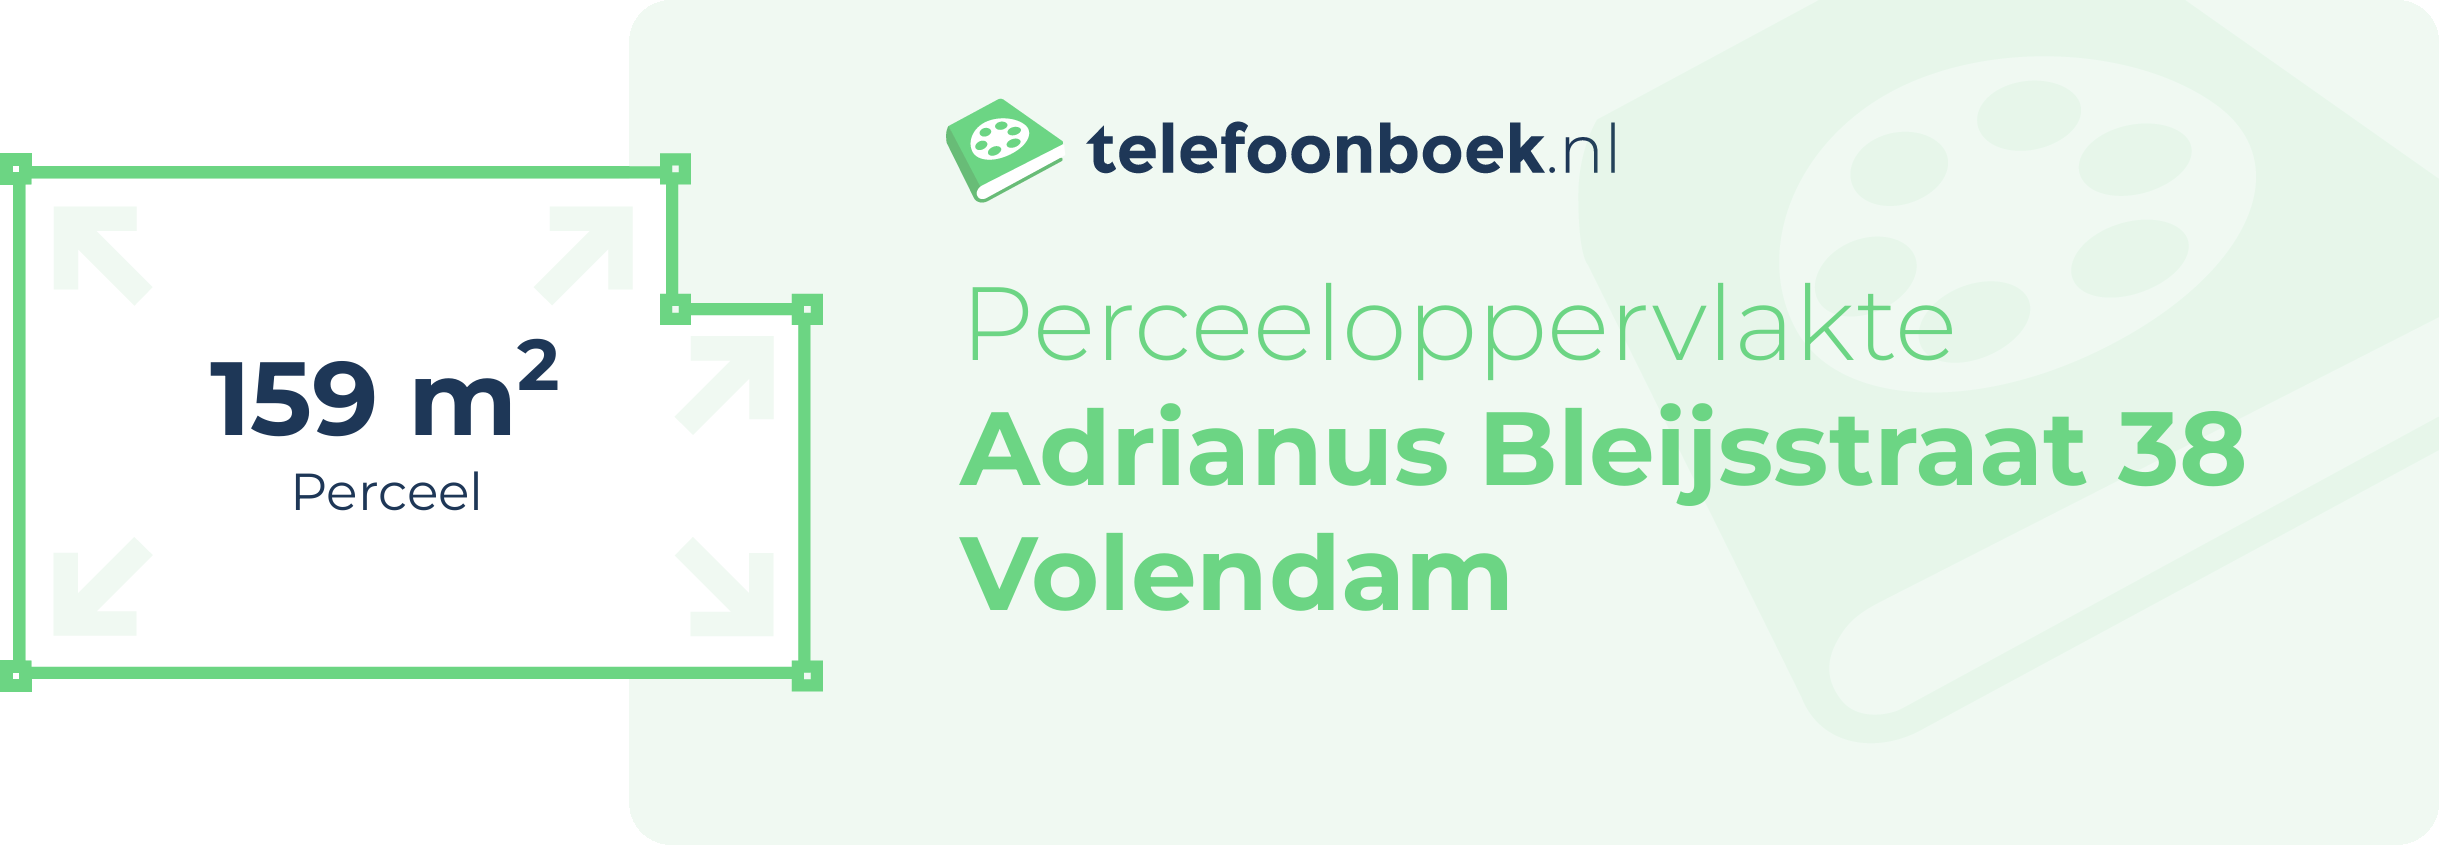 Perceeloppervlakte Adrianus Bleijsstraat 38 Volendam